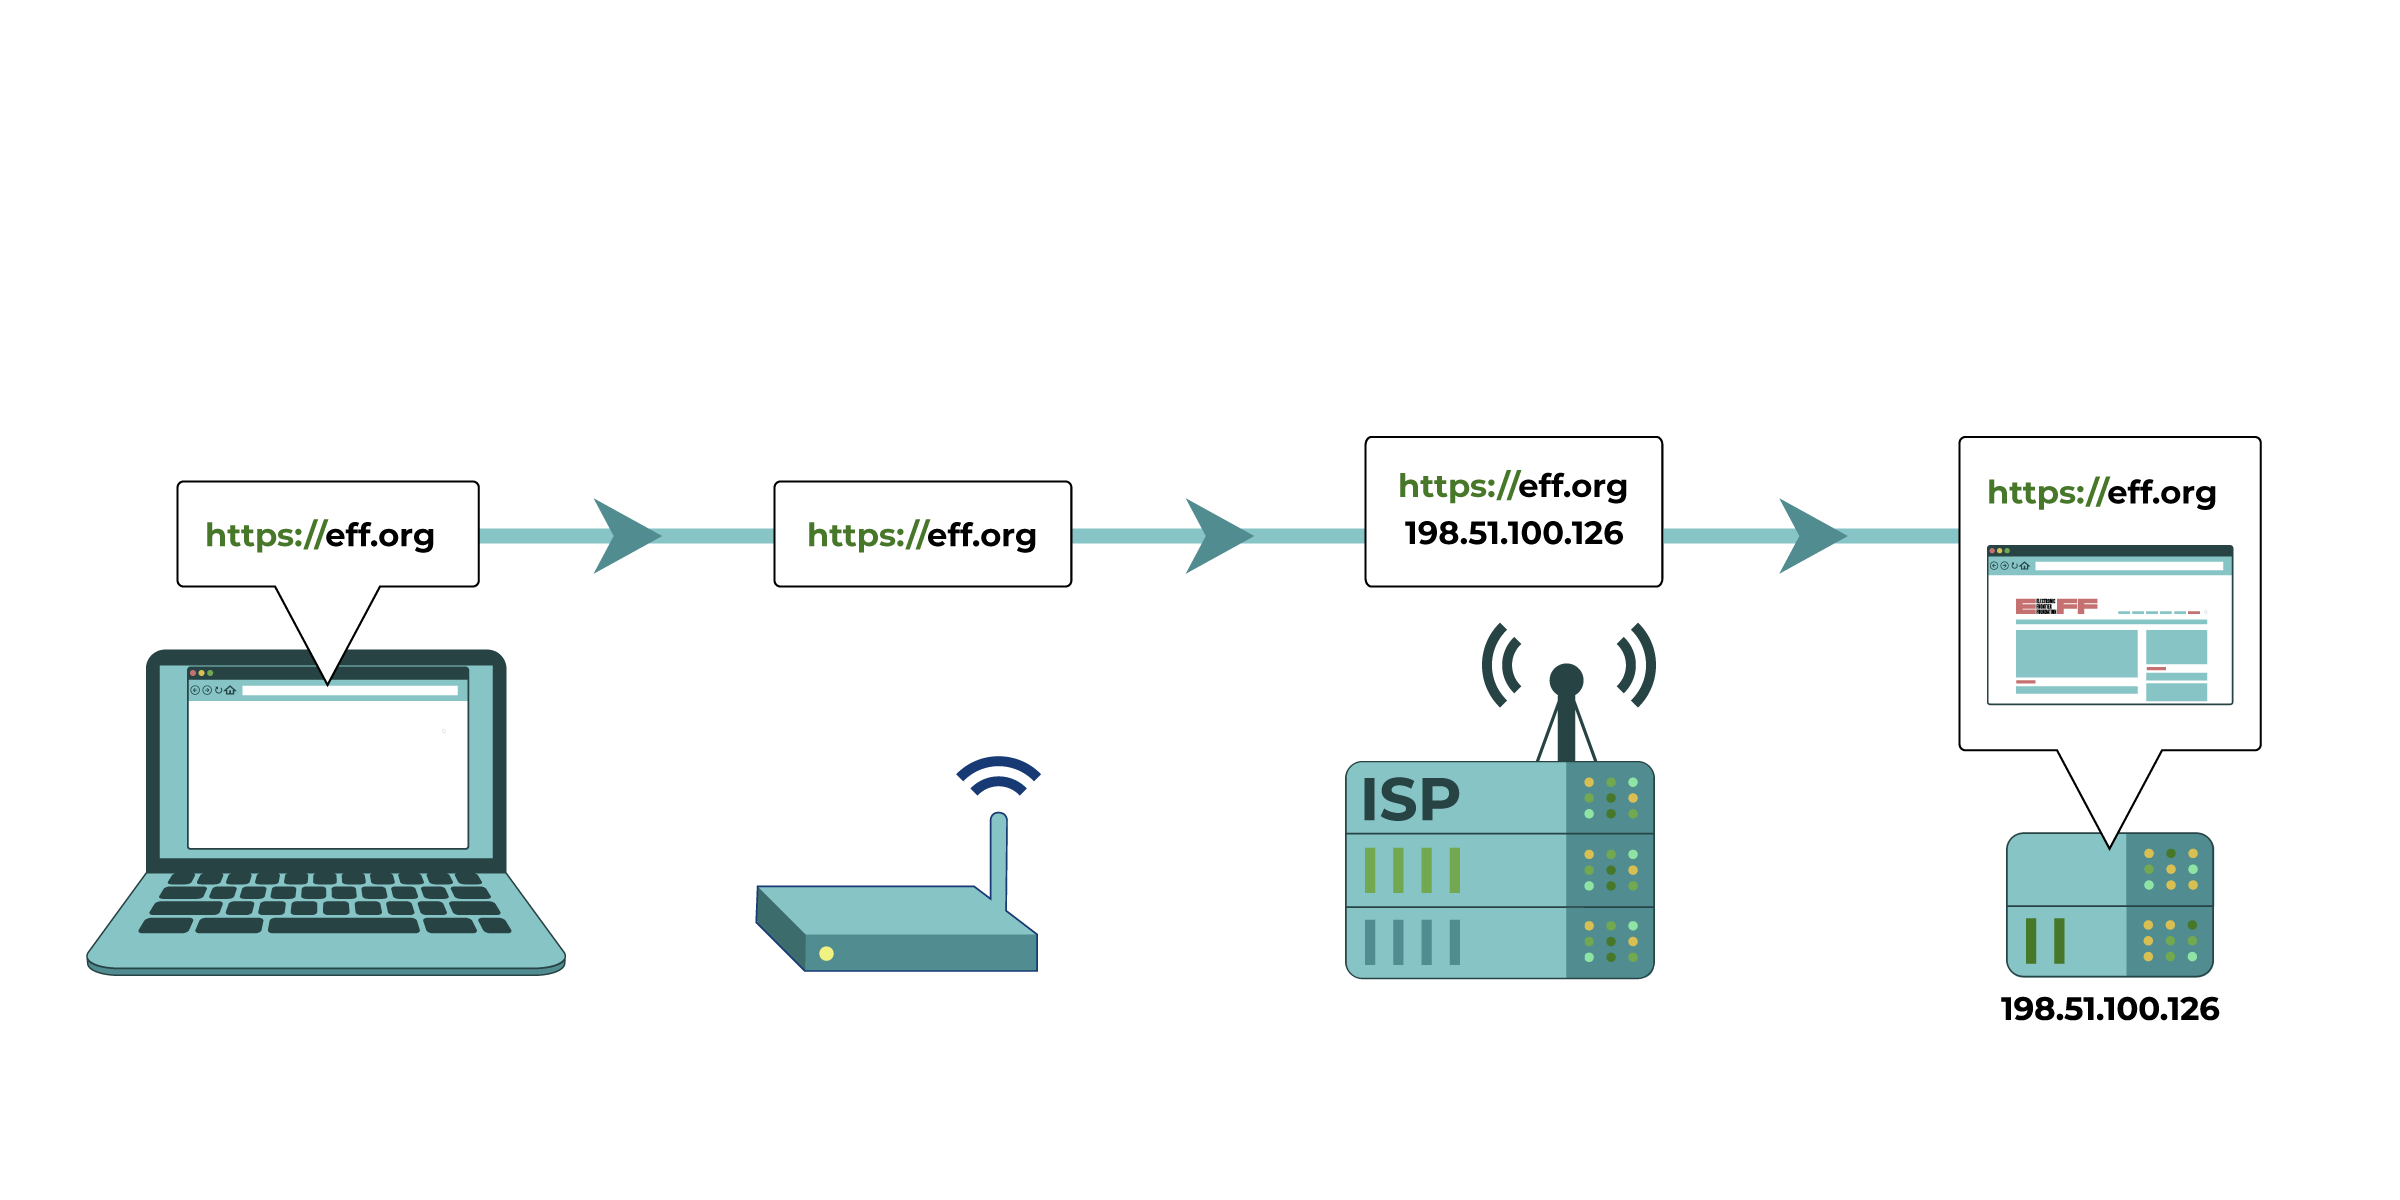 Su ordenador intenta conectarse a https://eff.org, que se encuentra en una dirección IP listada (la secuencia numerada al lado del servidor asociado con el sitio web de la EFF). La solicitud de ese sitio web se hace y se pasa a diversos dispositivos, como el enrutador de la red doméstica y el proveedor de servicios de Internet (ISP), antes de llegar a la dirección IP prevista de https://eff.org. El sitio web se carga con éxito para su computadora.